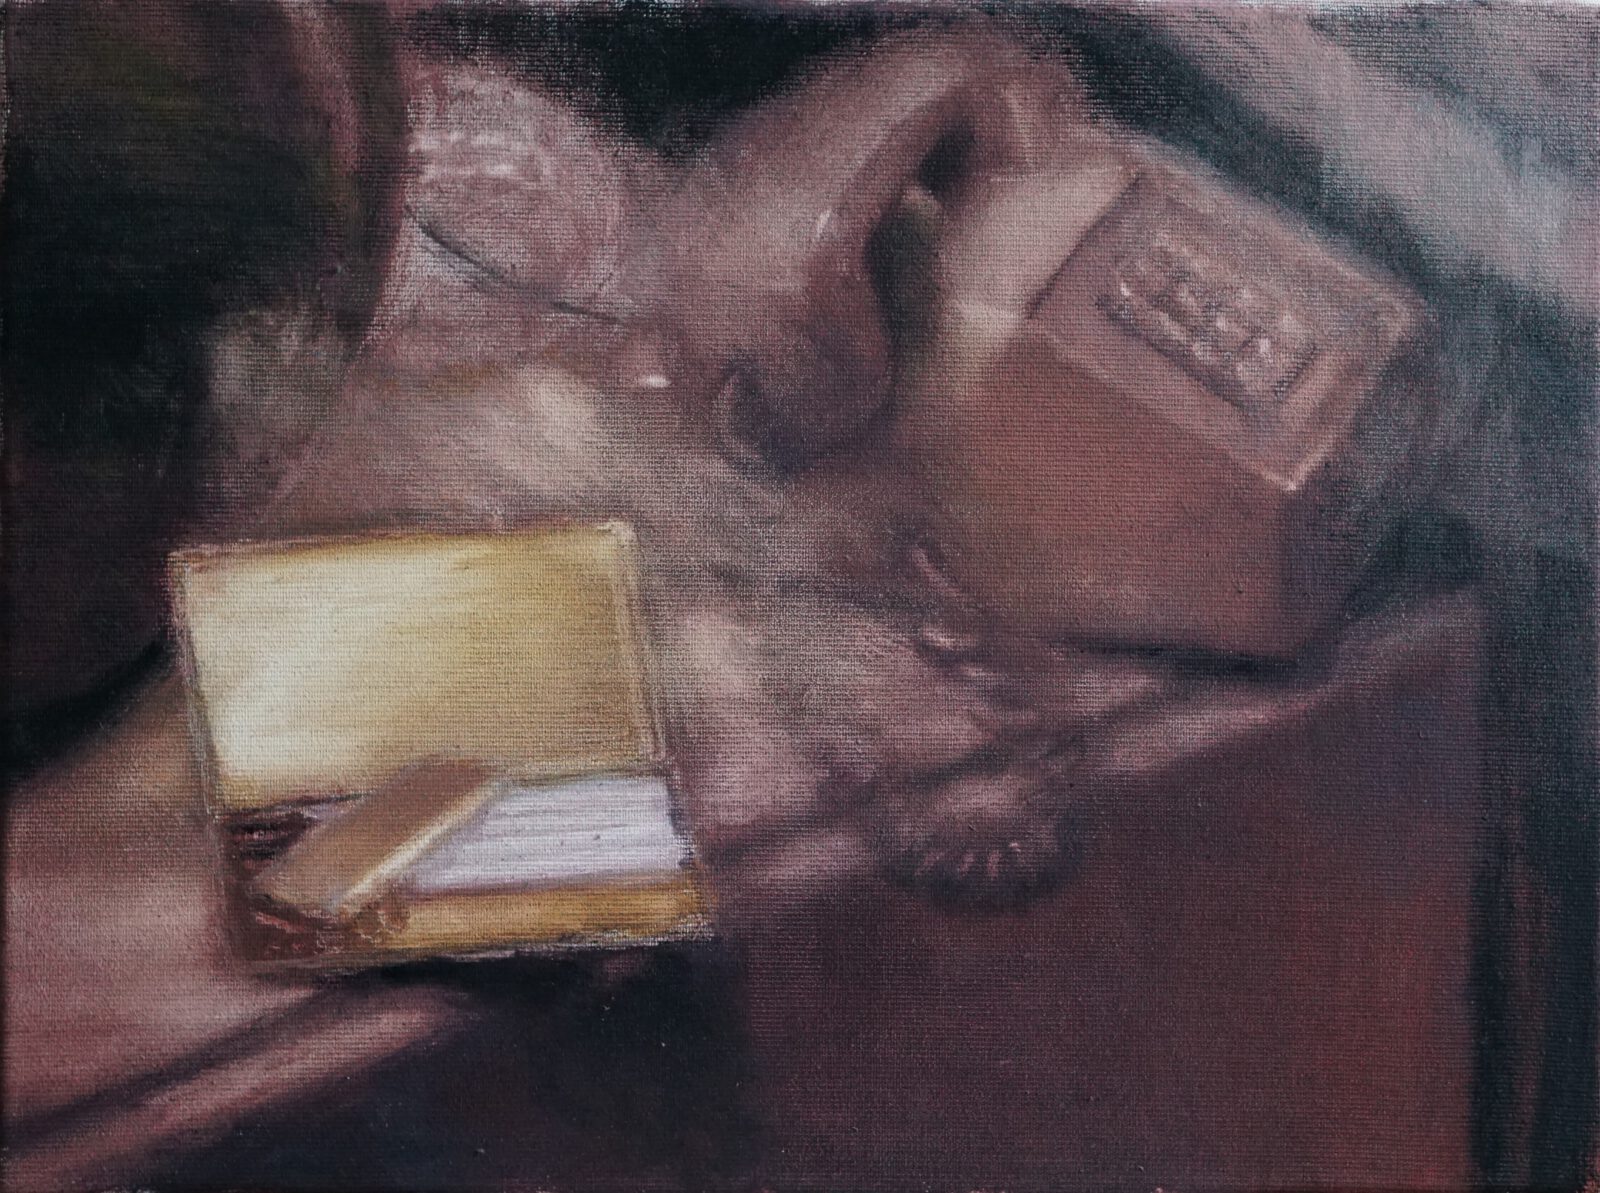 Łukasz Stokłosa, Dynasty, oil on canvas, 30x40cm, 2021